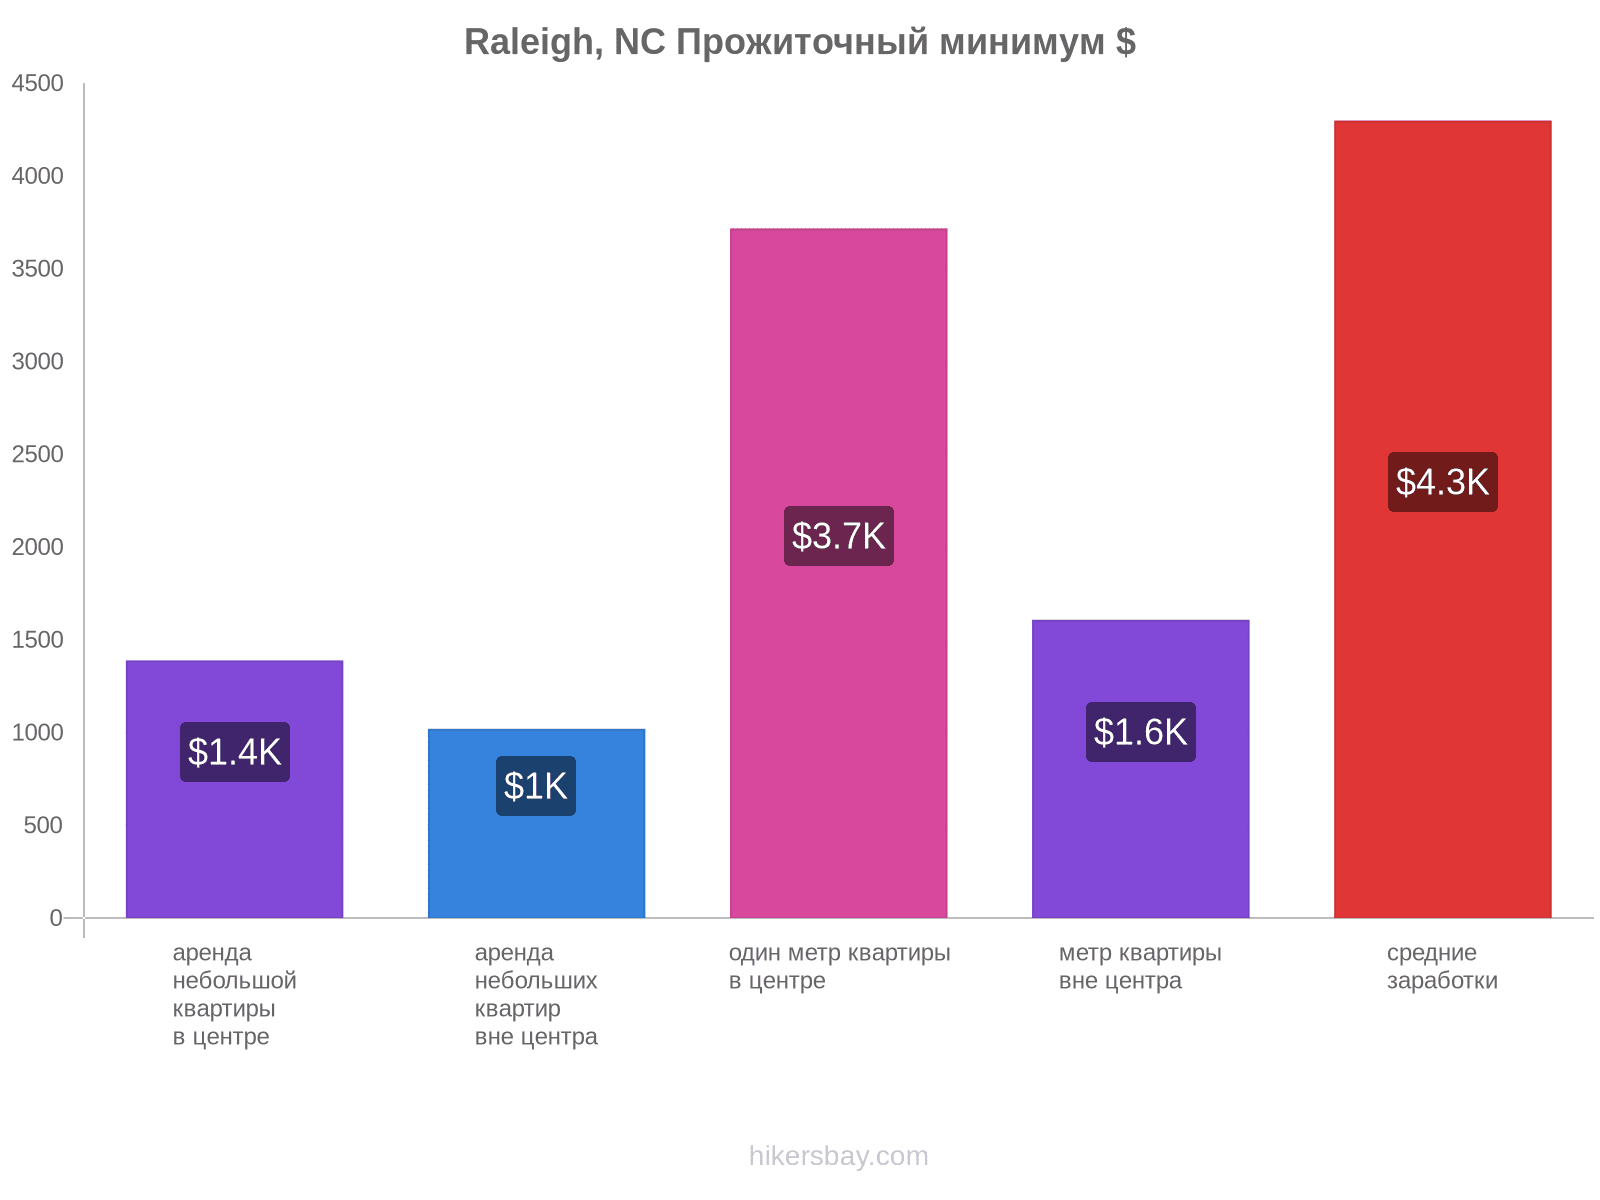 Raleigh, NC стоимость жизни hikersbay.com